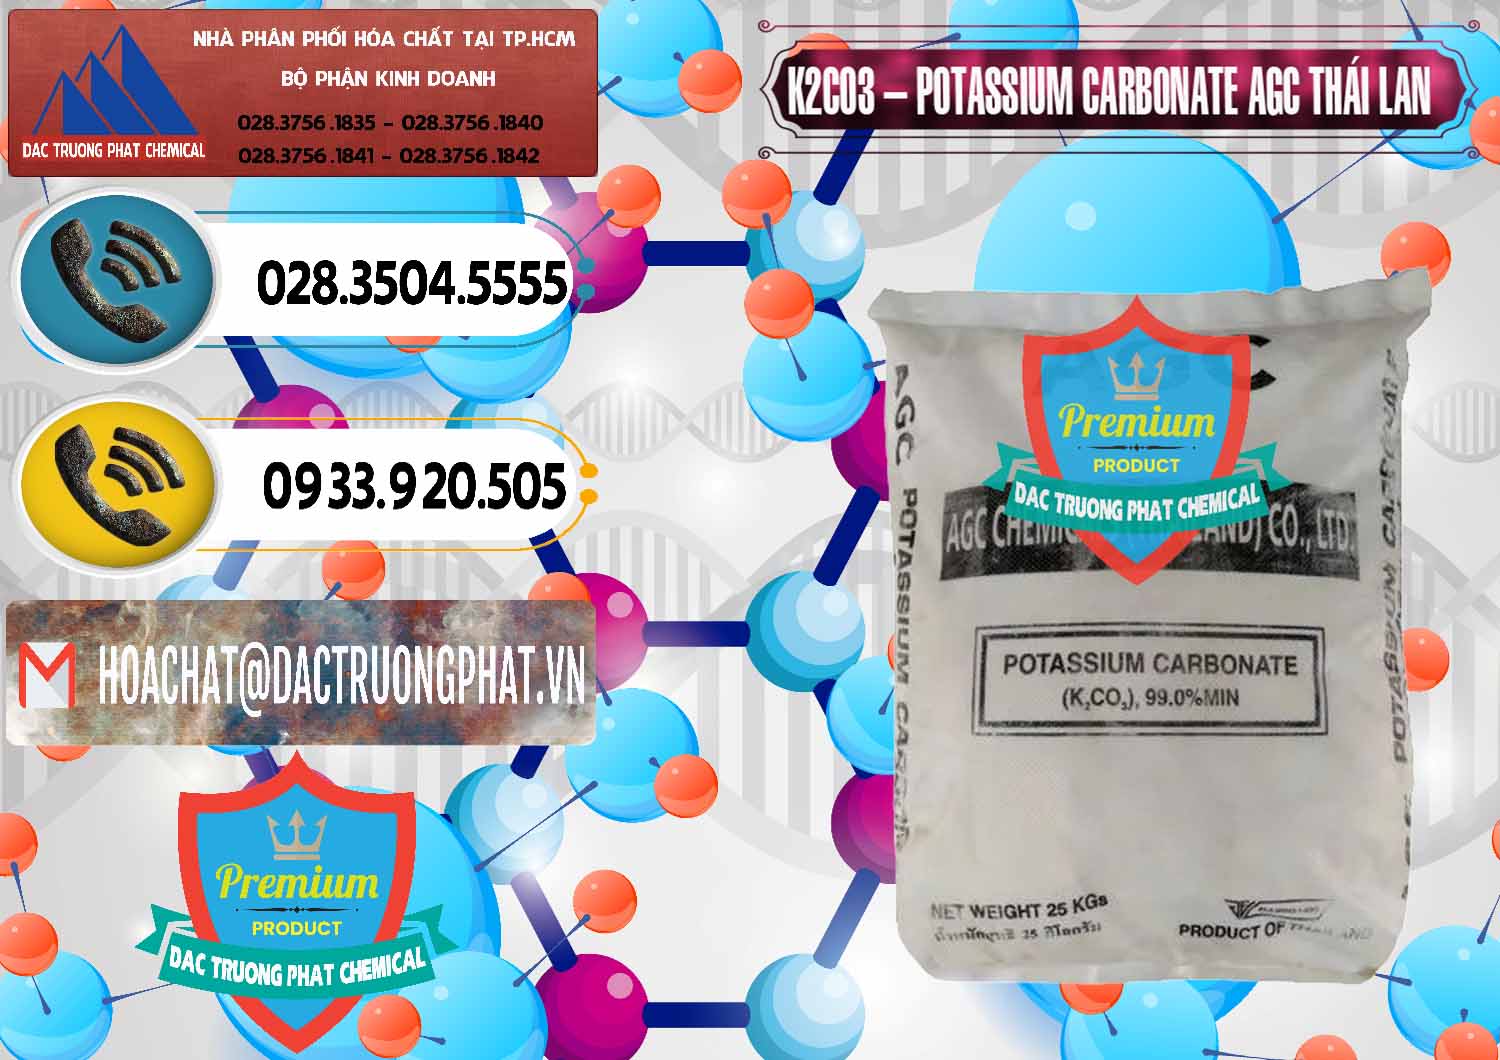 Cty bán - cung cấp K2Co3 – Potassium Carbonate AGC Thái Lan Thailand - 0471 - Đơn vị chuyên cung ứng và phân phối hóa chất tại TP.HCM - hoachatdetnhuom.vn